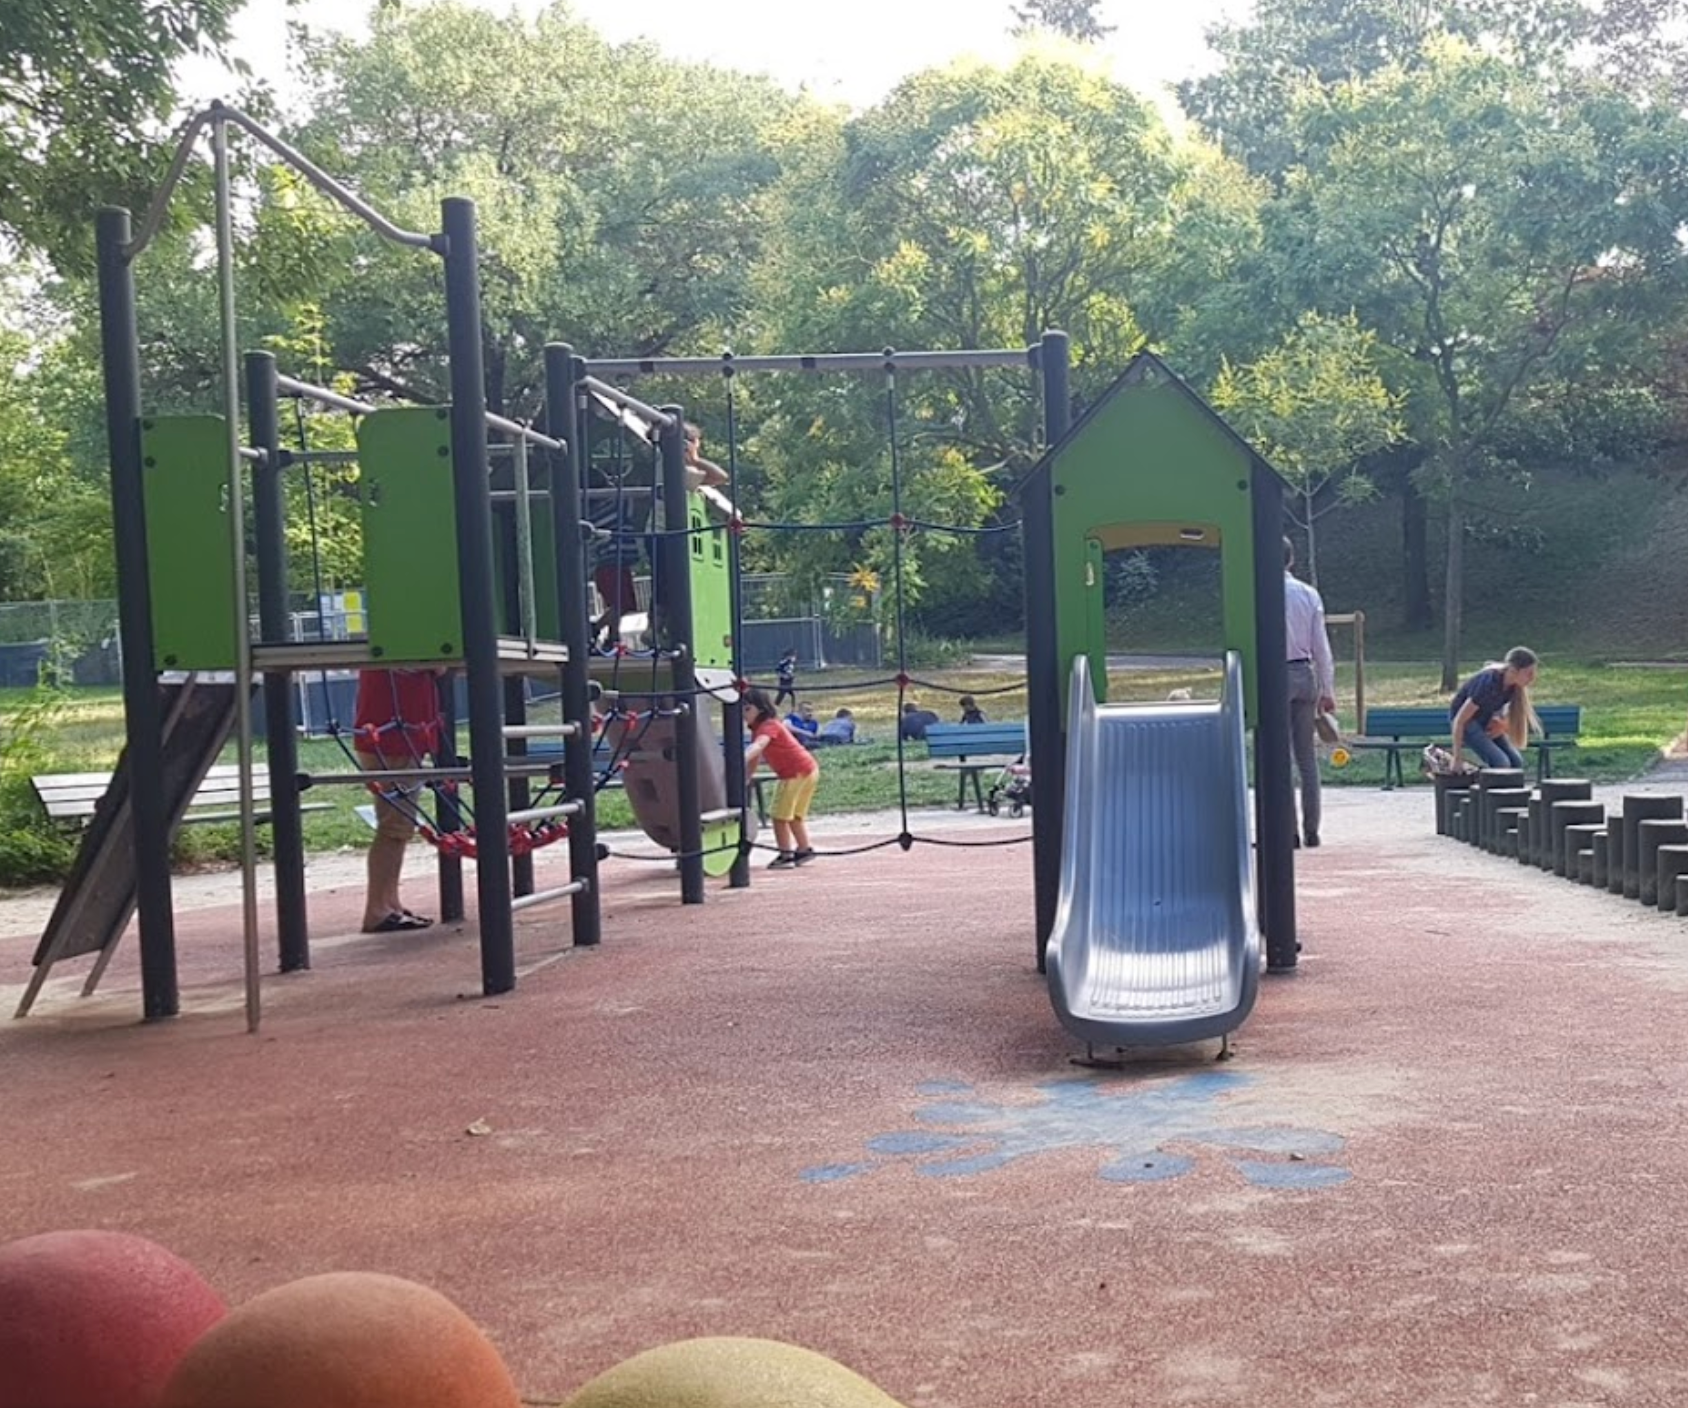 Playground in Parc Kellermann